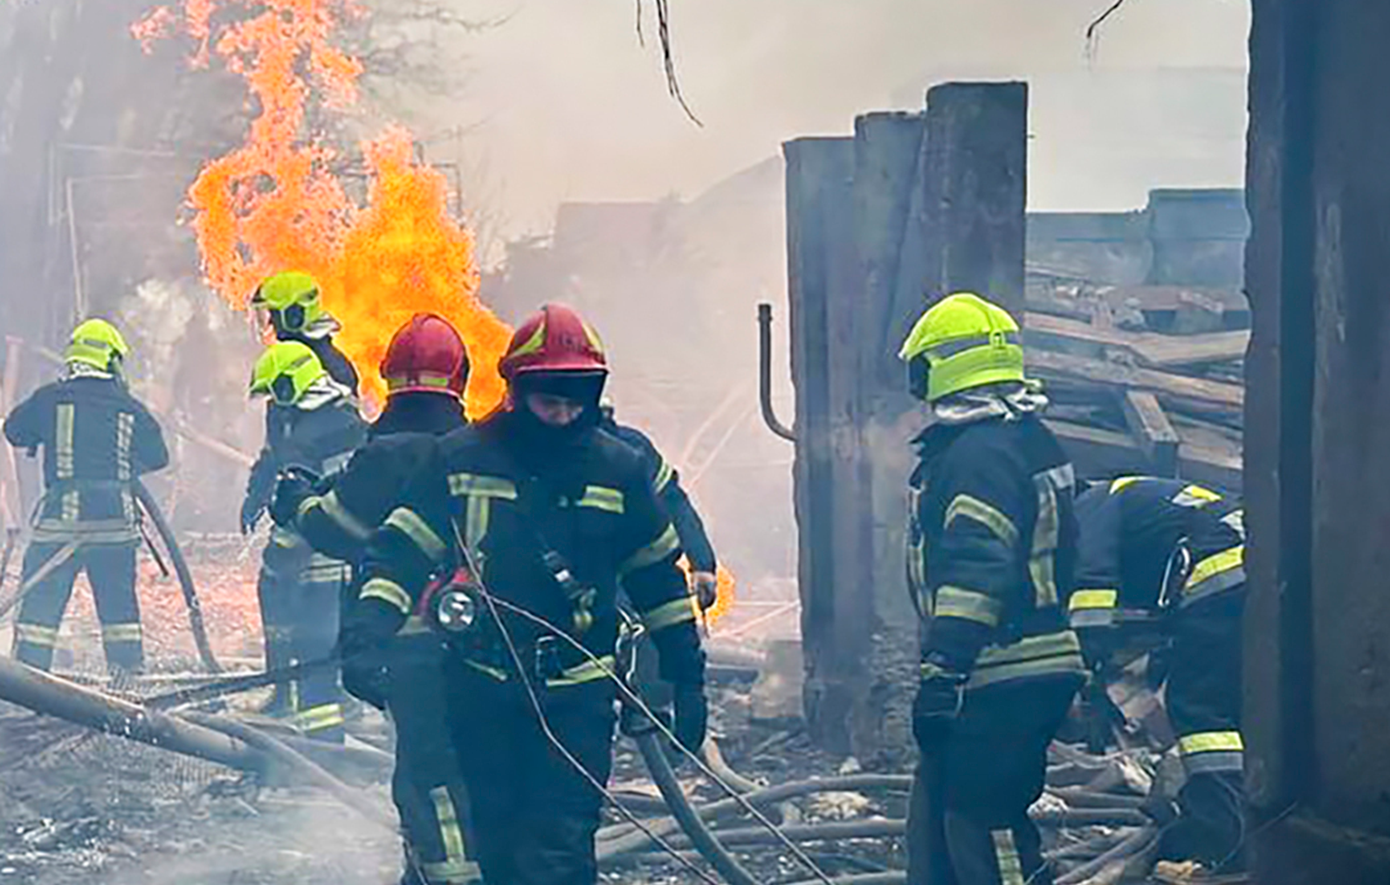 Πυρκαγιά σε πολυσύχναστη αγορά έπειτα από αναφορές για καταρρίψεις drones στην περιφέρεια Κουρσκ